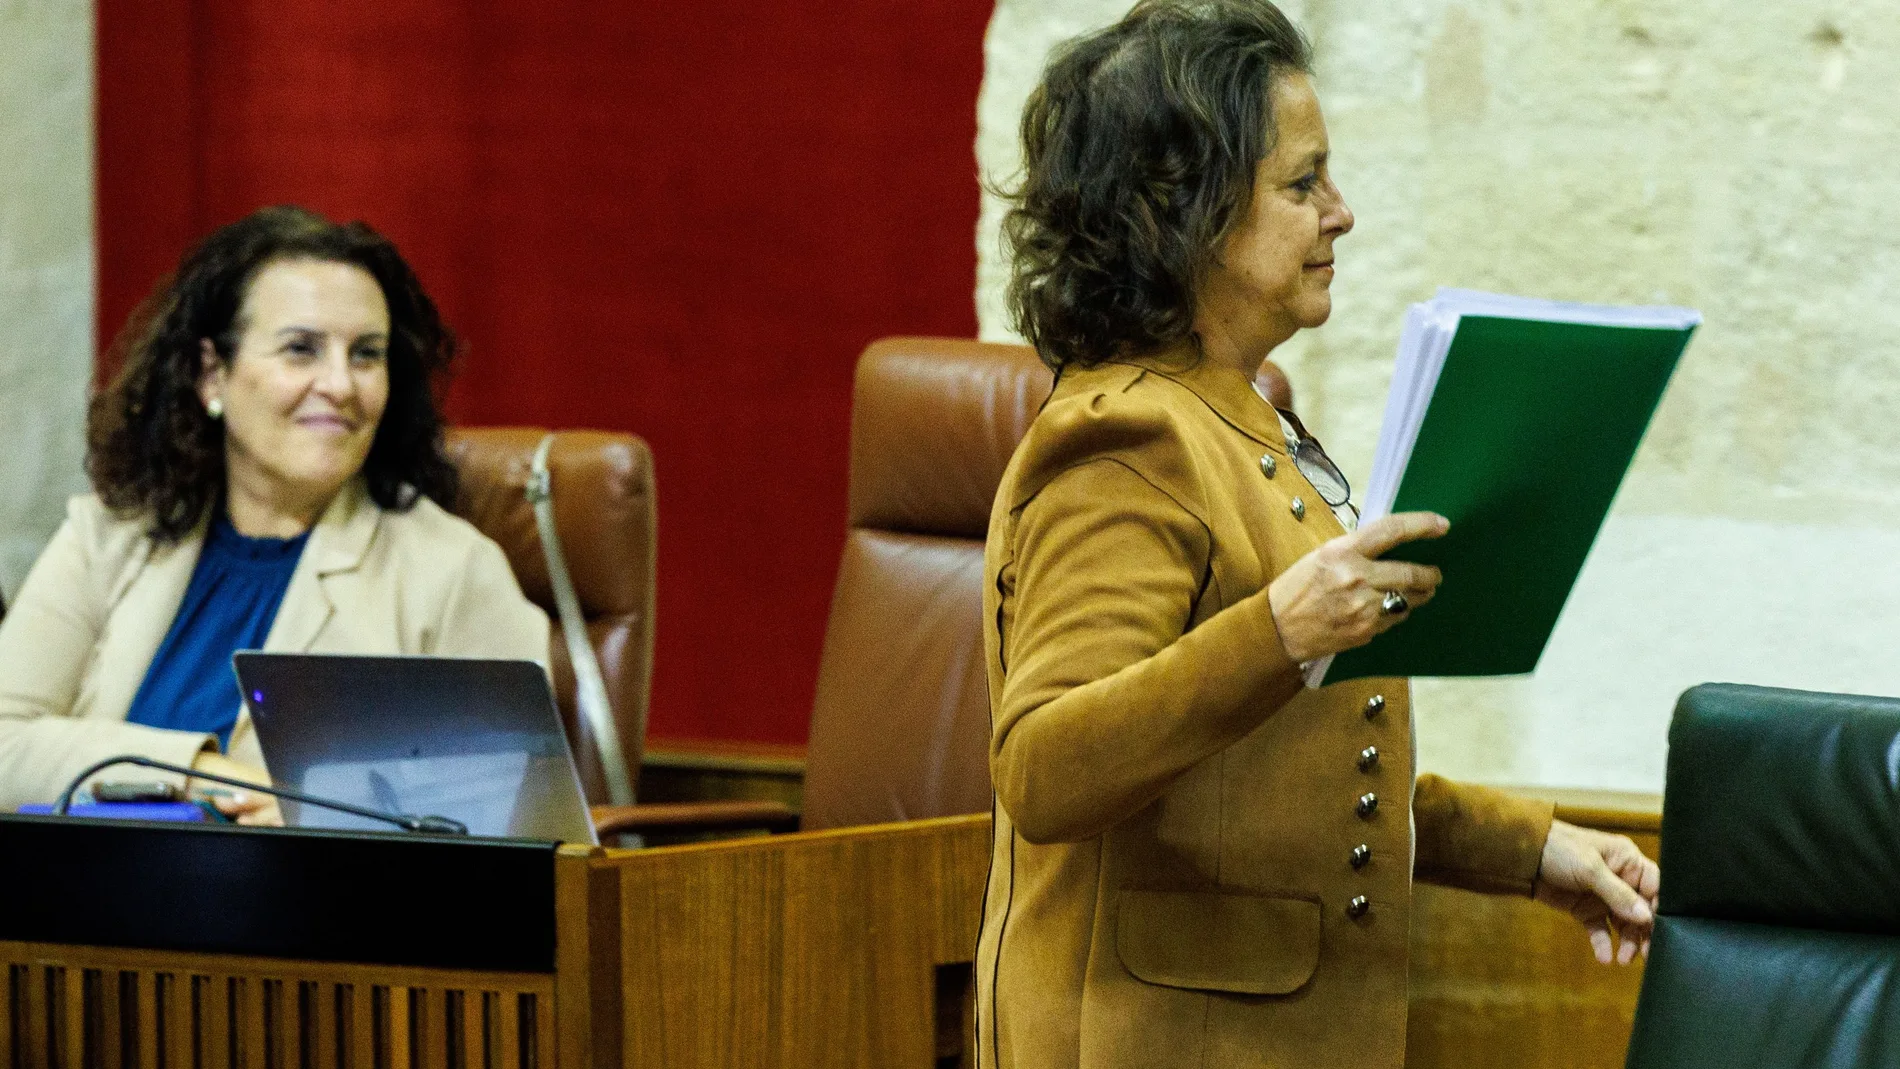 La consejera de Salud, Catalina García, tras su intervención en el pleno del Parlamento de Andalucía